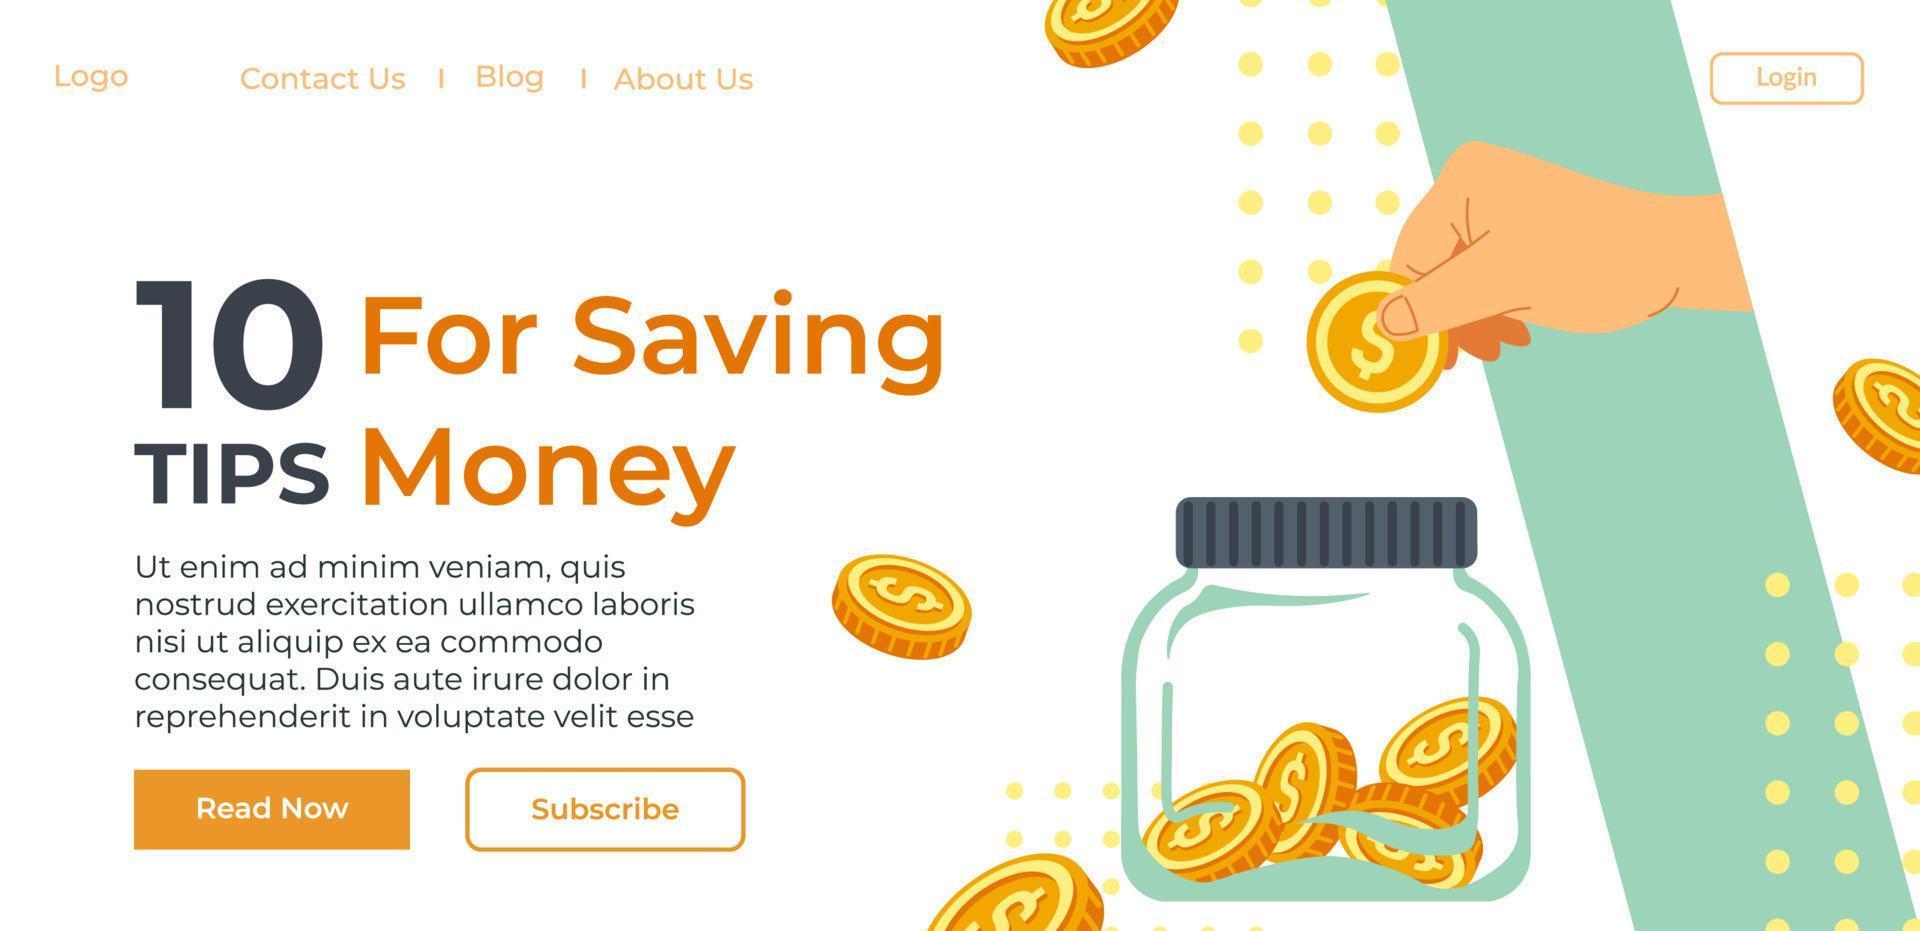 tio tips för sparande pengar, hemsida information vektor